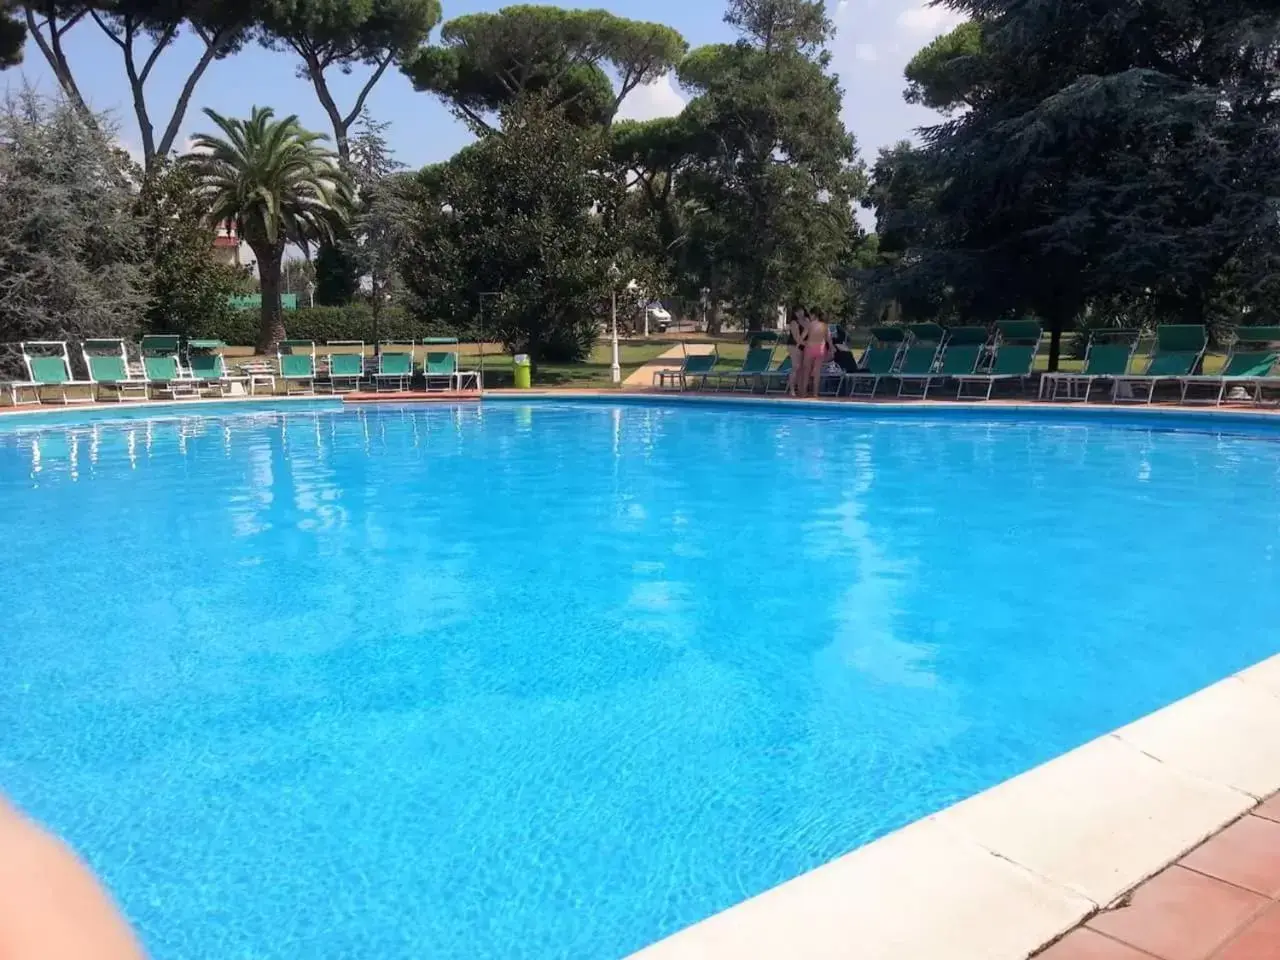 Day, Swimming Pool in Hotel Parco Dei Principi